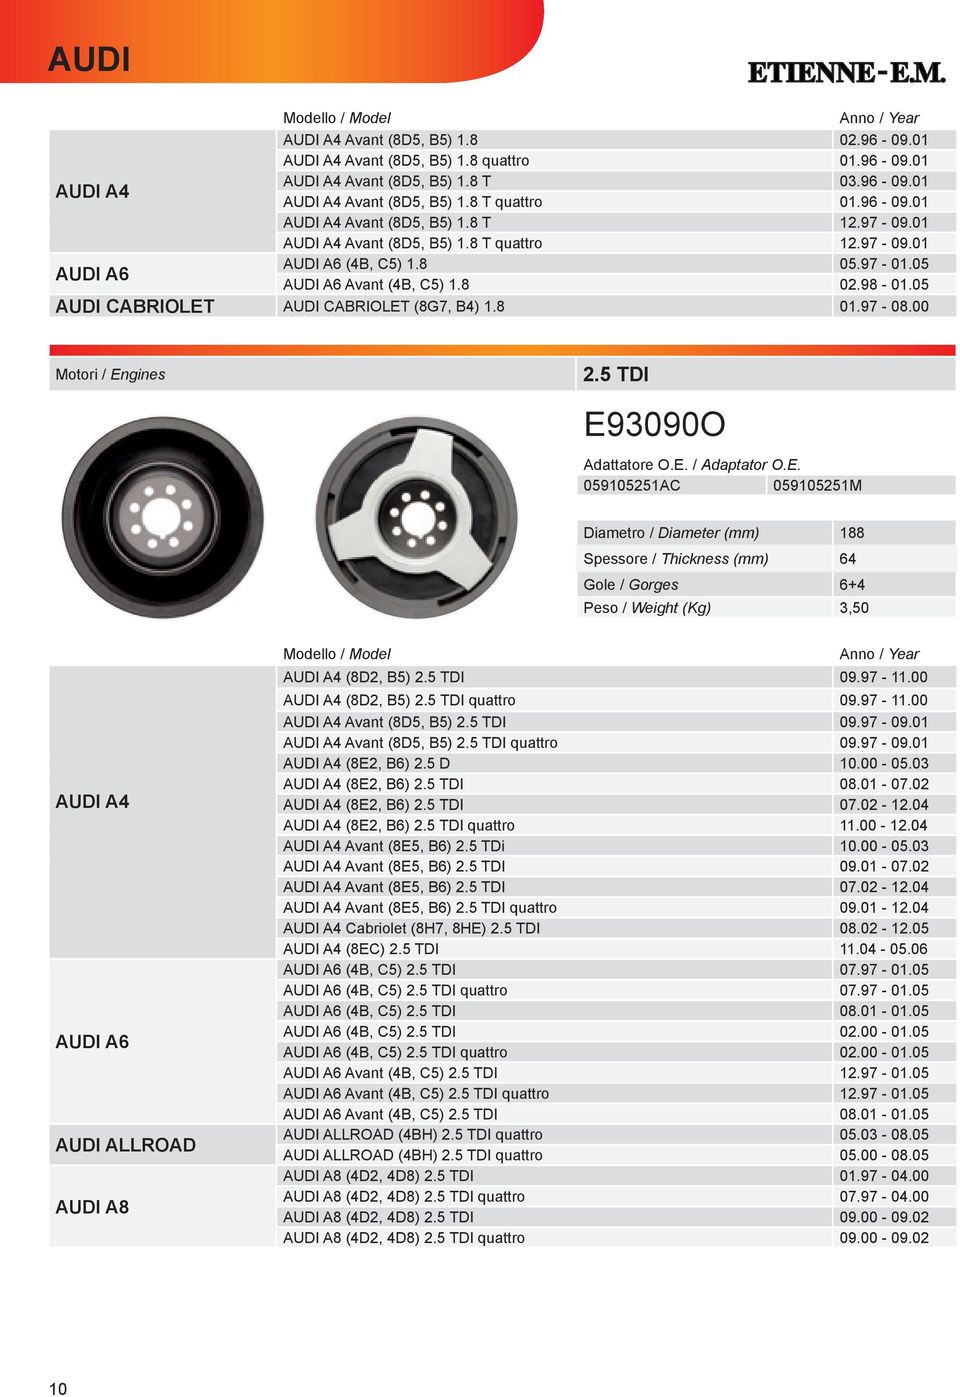 5 TDI E93090O 059105251AC 059105251M Diametro / Diameter (mm) 188 Spessore / Thickness (mm) 64 +4 Peso / Weight (Kg) 3,50 AUDI A4 AUDI A6 AUDI ALLROAD AUDI A8 AUDI A4 (8D2, B5) 2.5 TDI 09.97-11.